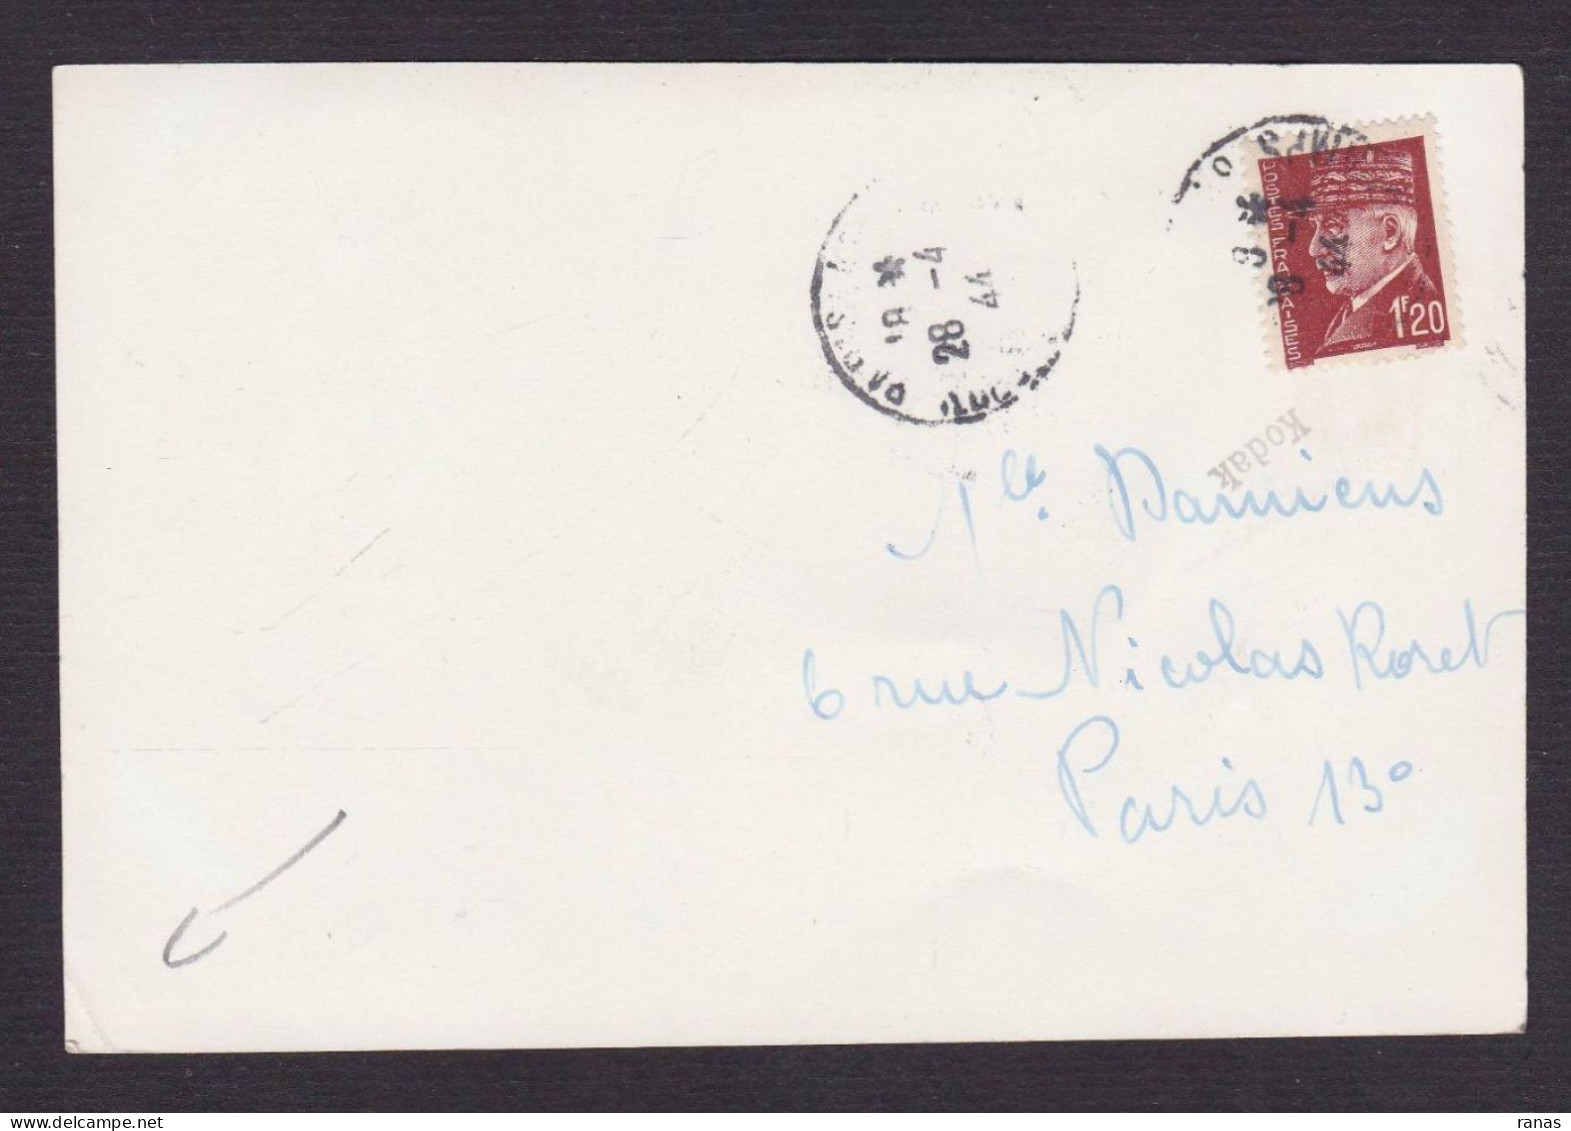 Signature Autographe De Jean Marais Sur Photo 10 X 14,7 - Actors & Comedians